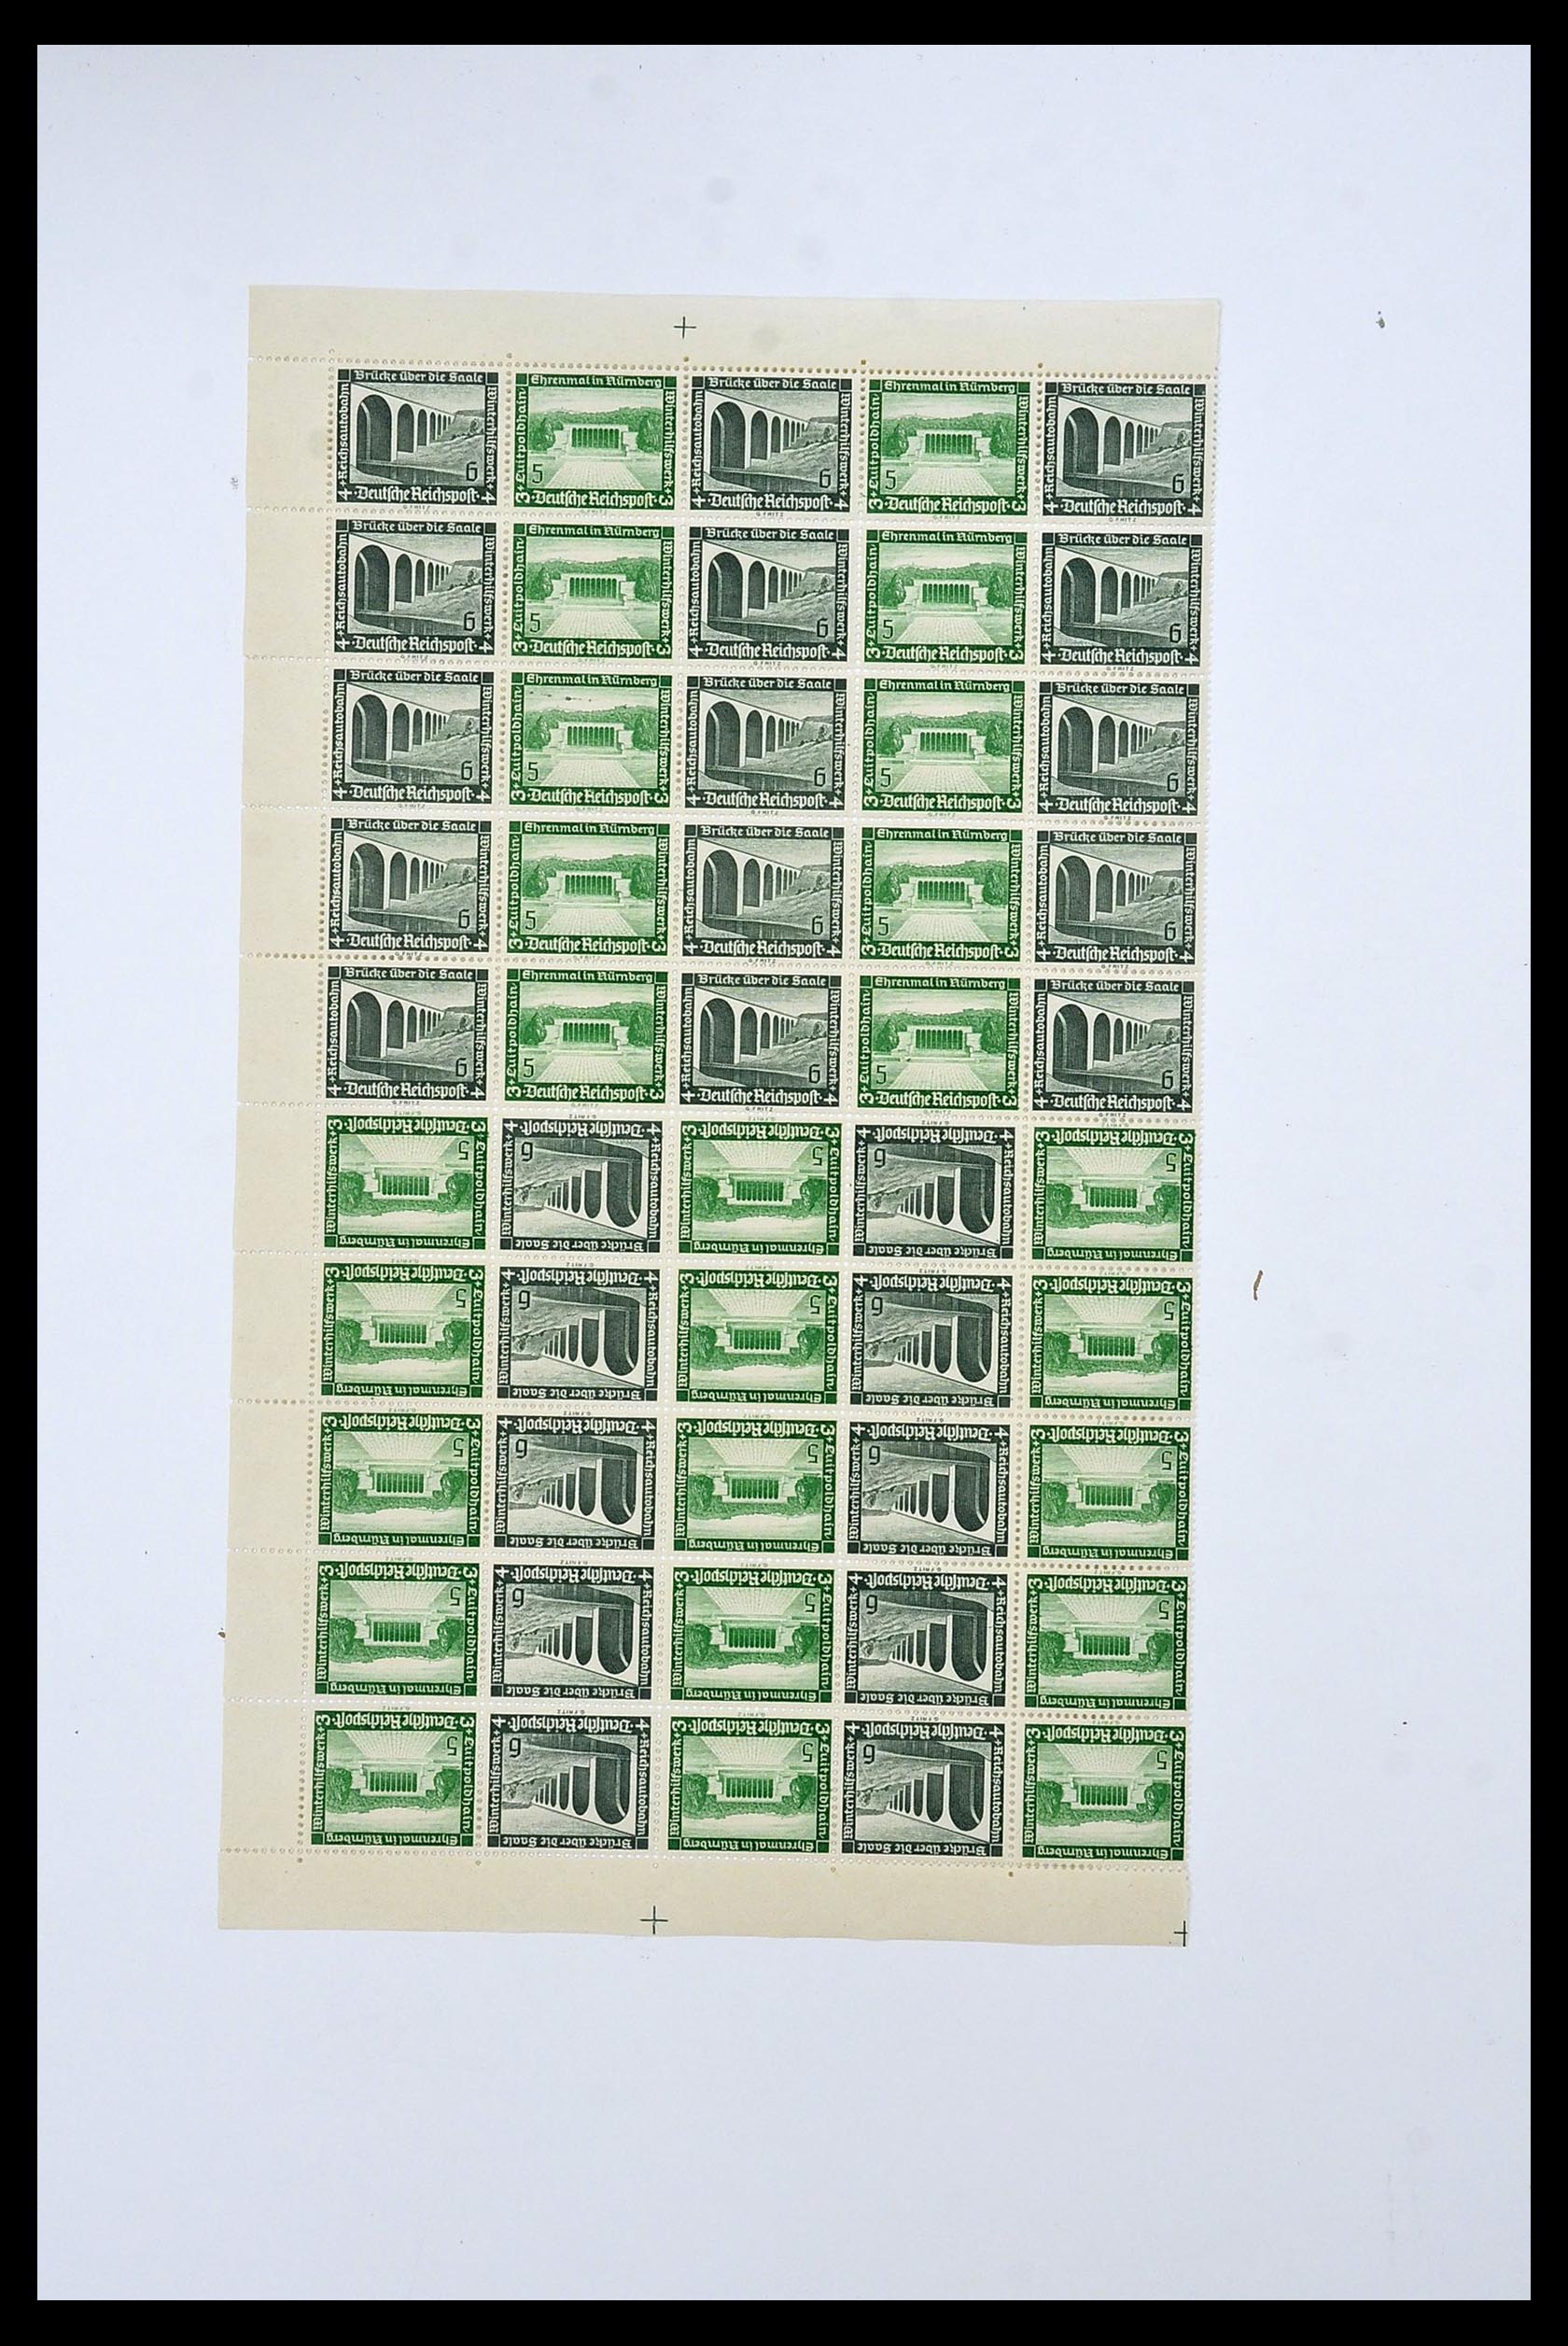 34164 059 - Stamp collection 34164 German Reich Markenheftchenbogen 1933-1942.